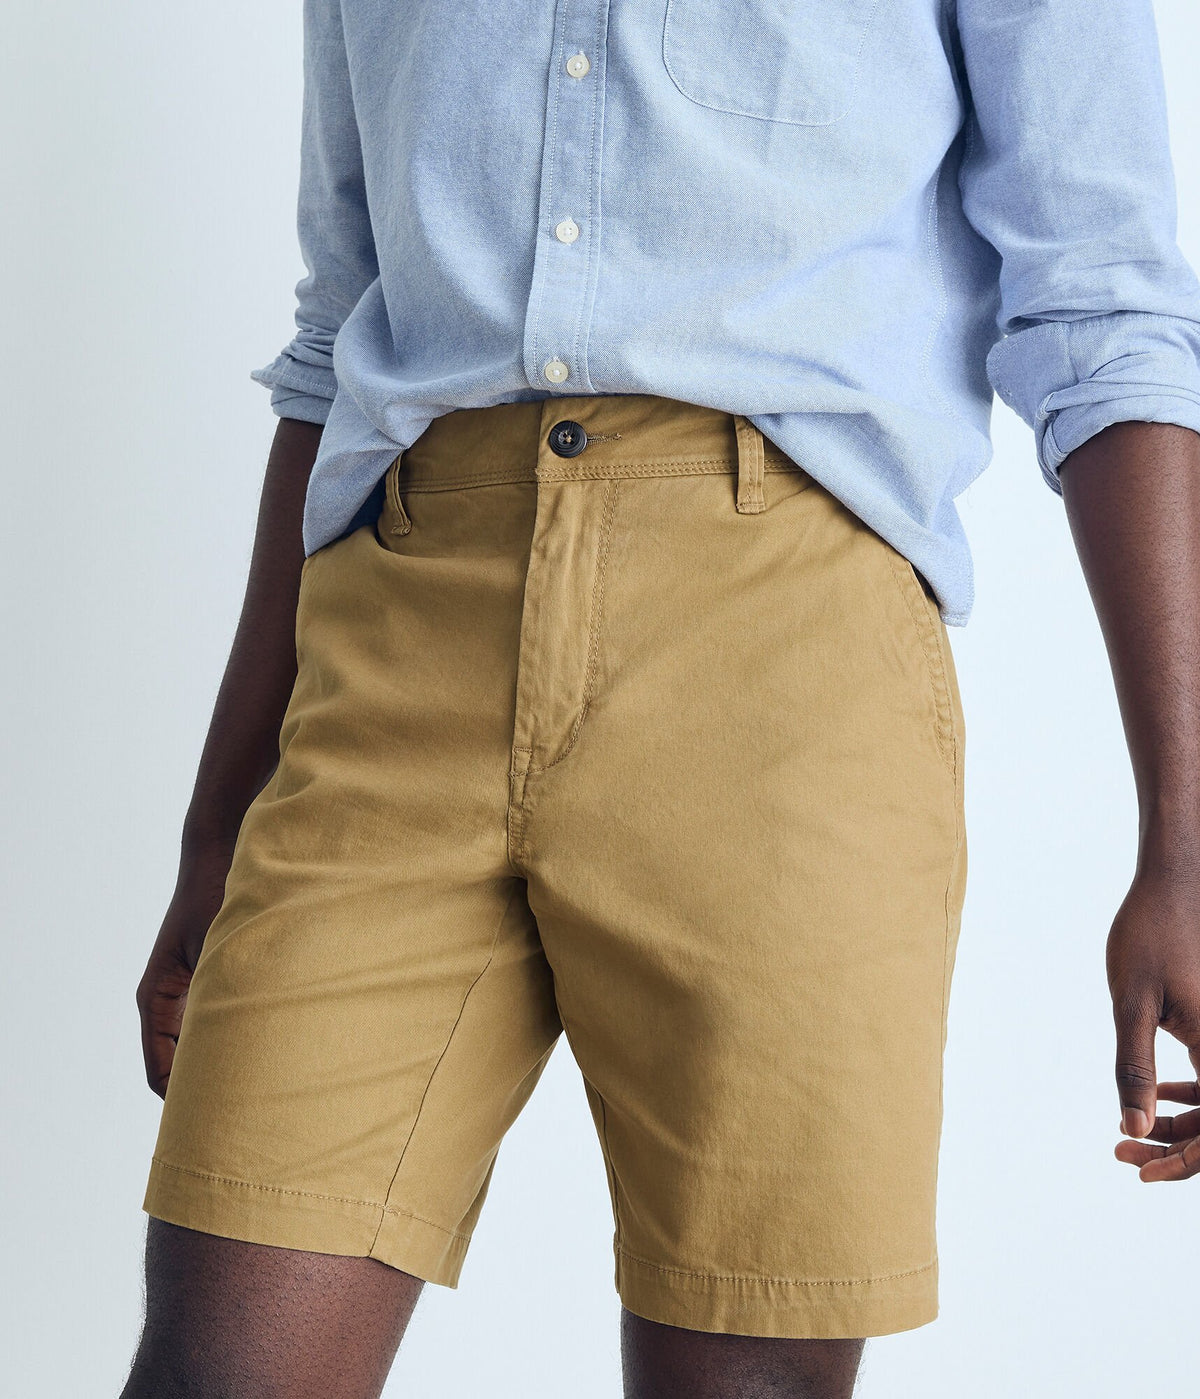 Aeropostale Mens' Classic Chino Shorts 9.5" - Khaki - Size 36 - Cotton - Teen Fashion & Clothing Sandalwood